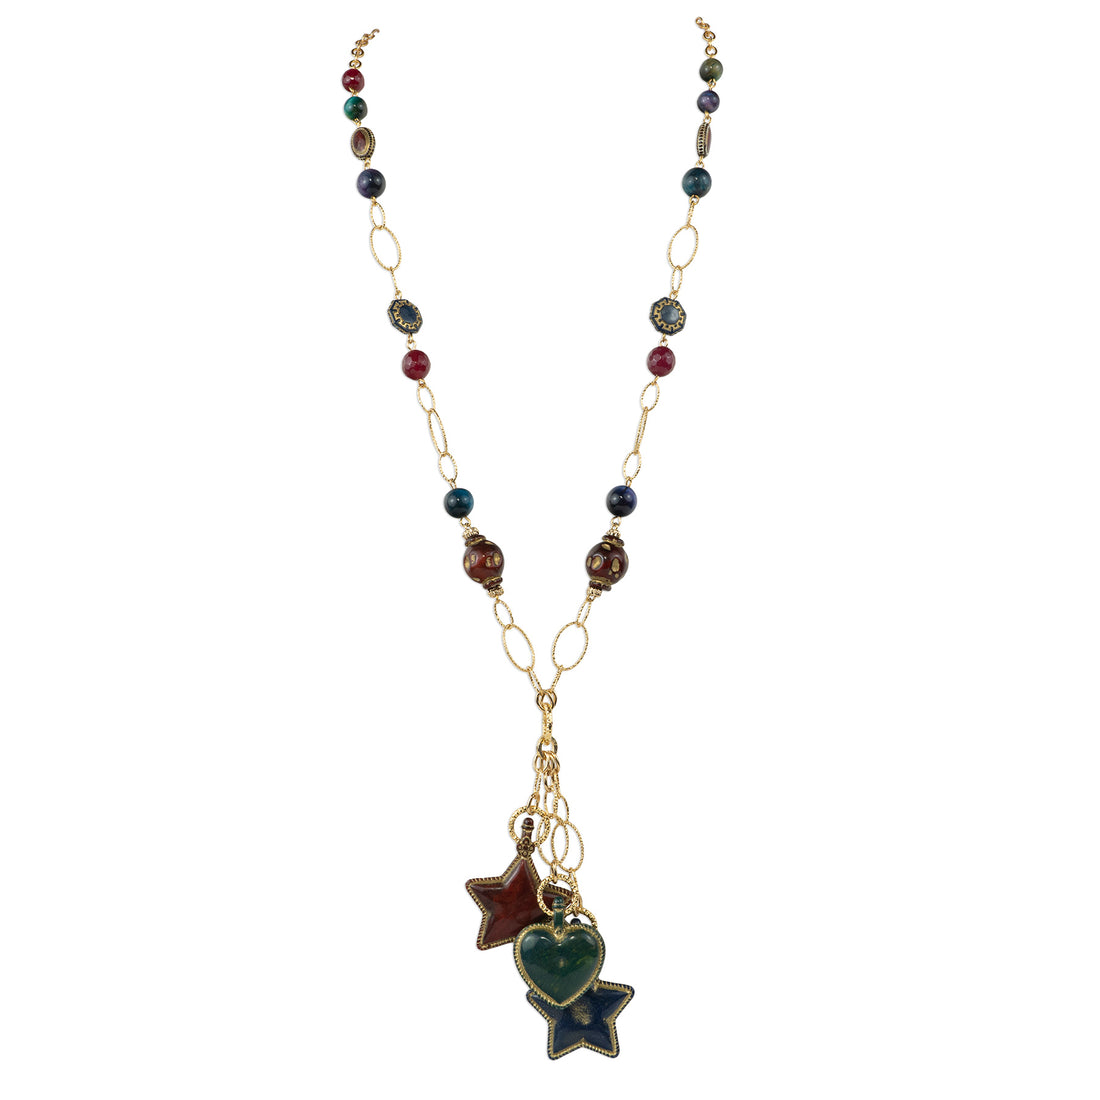 Semi-precious stone necklace with pendants